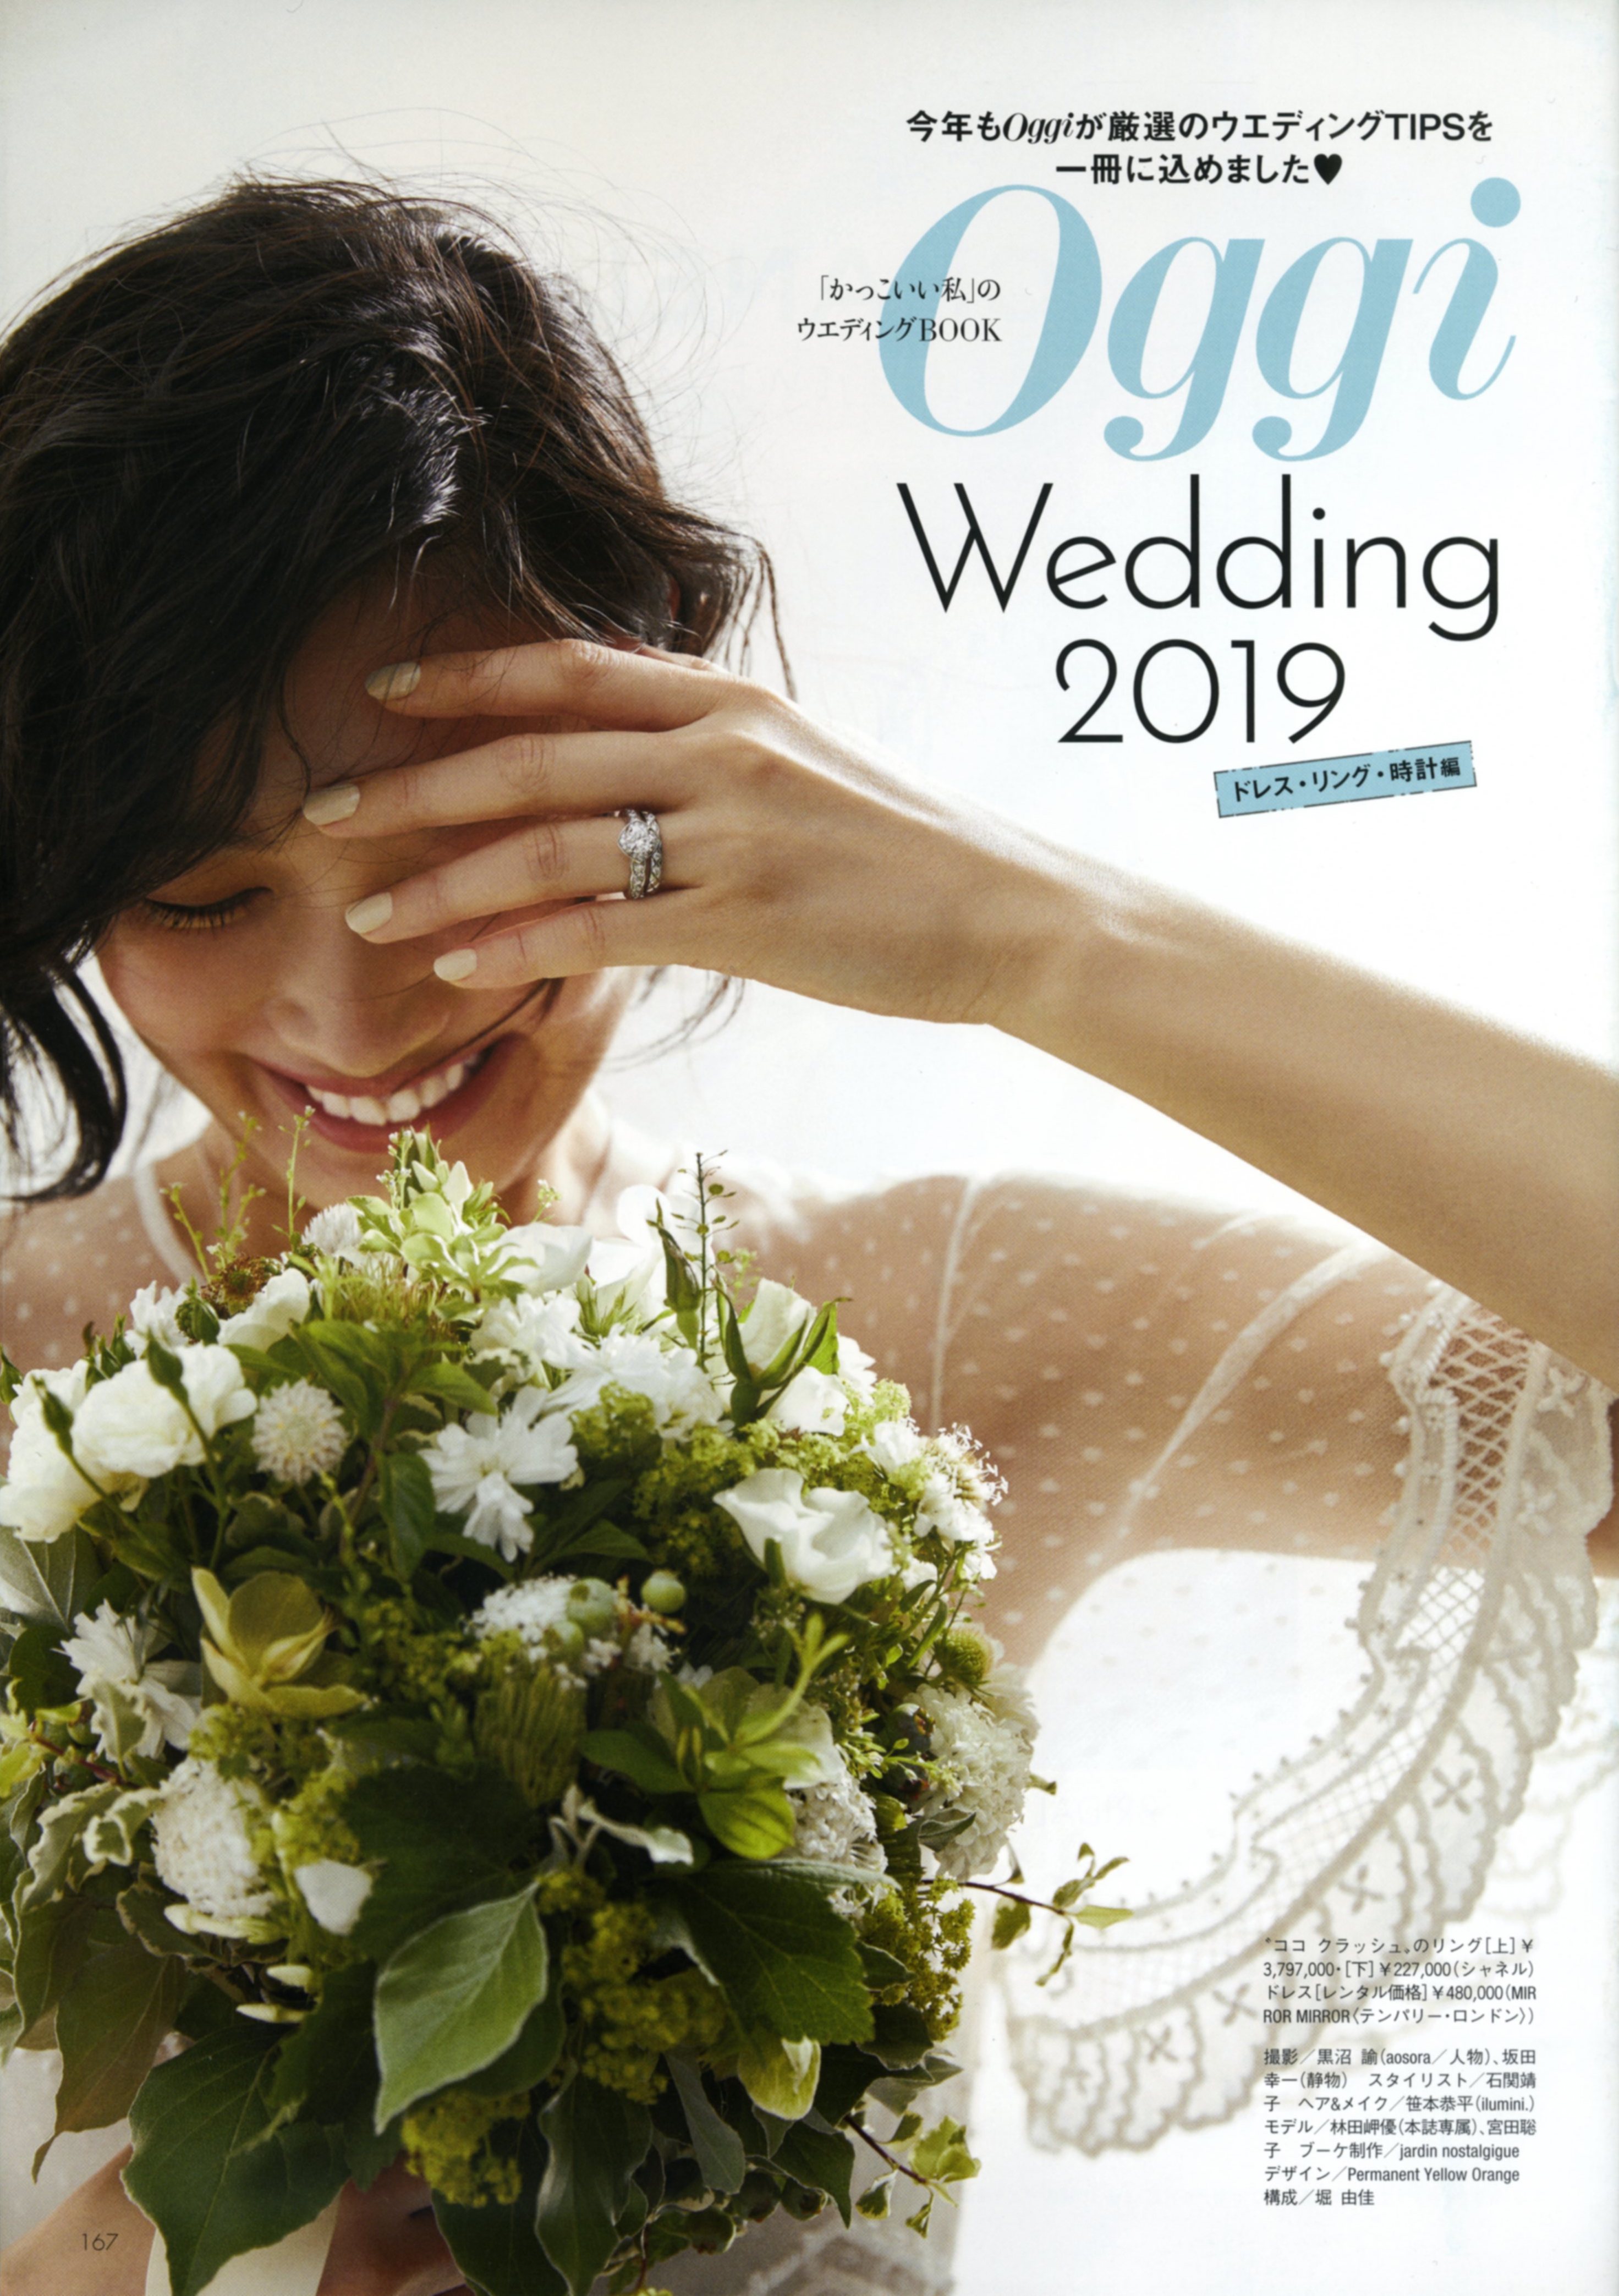 7月26日発売_Oggi9月号 別冊付録「Oggi Wedding 2019」 表紙